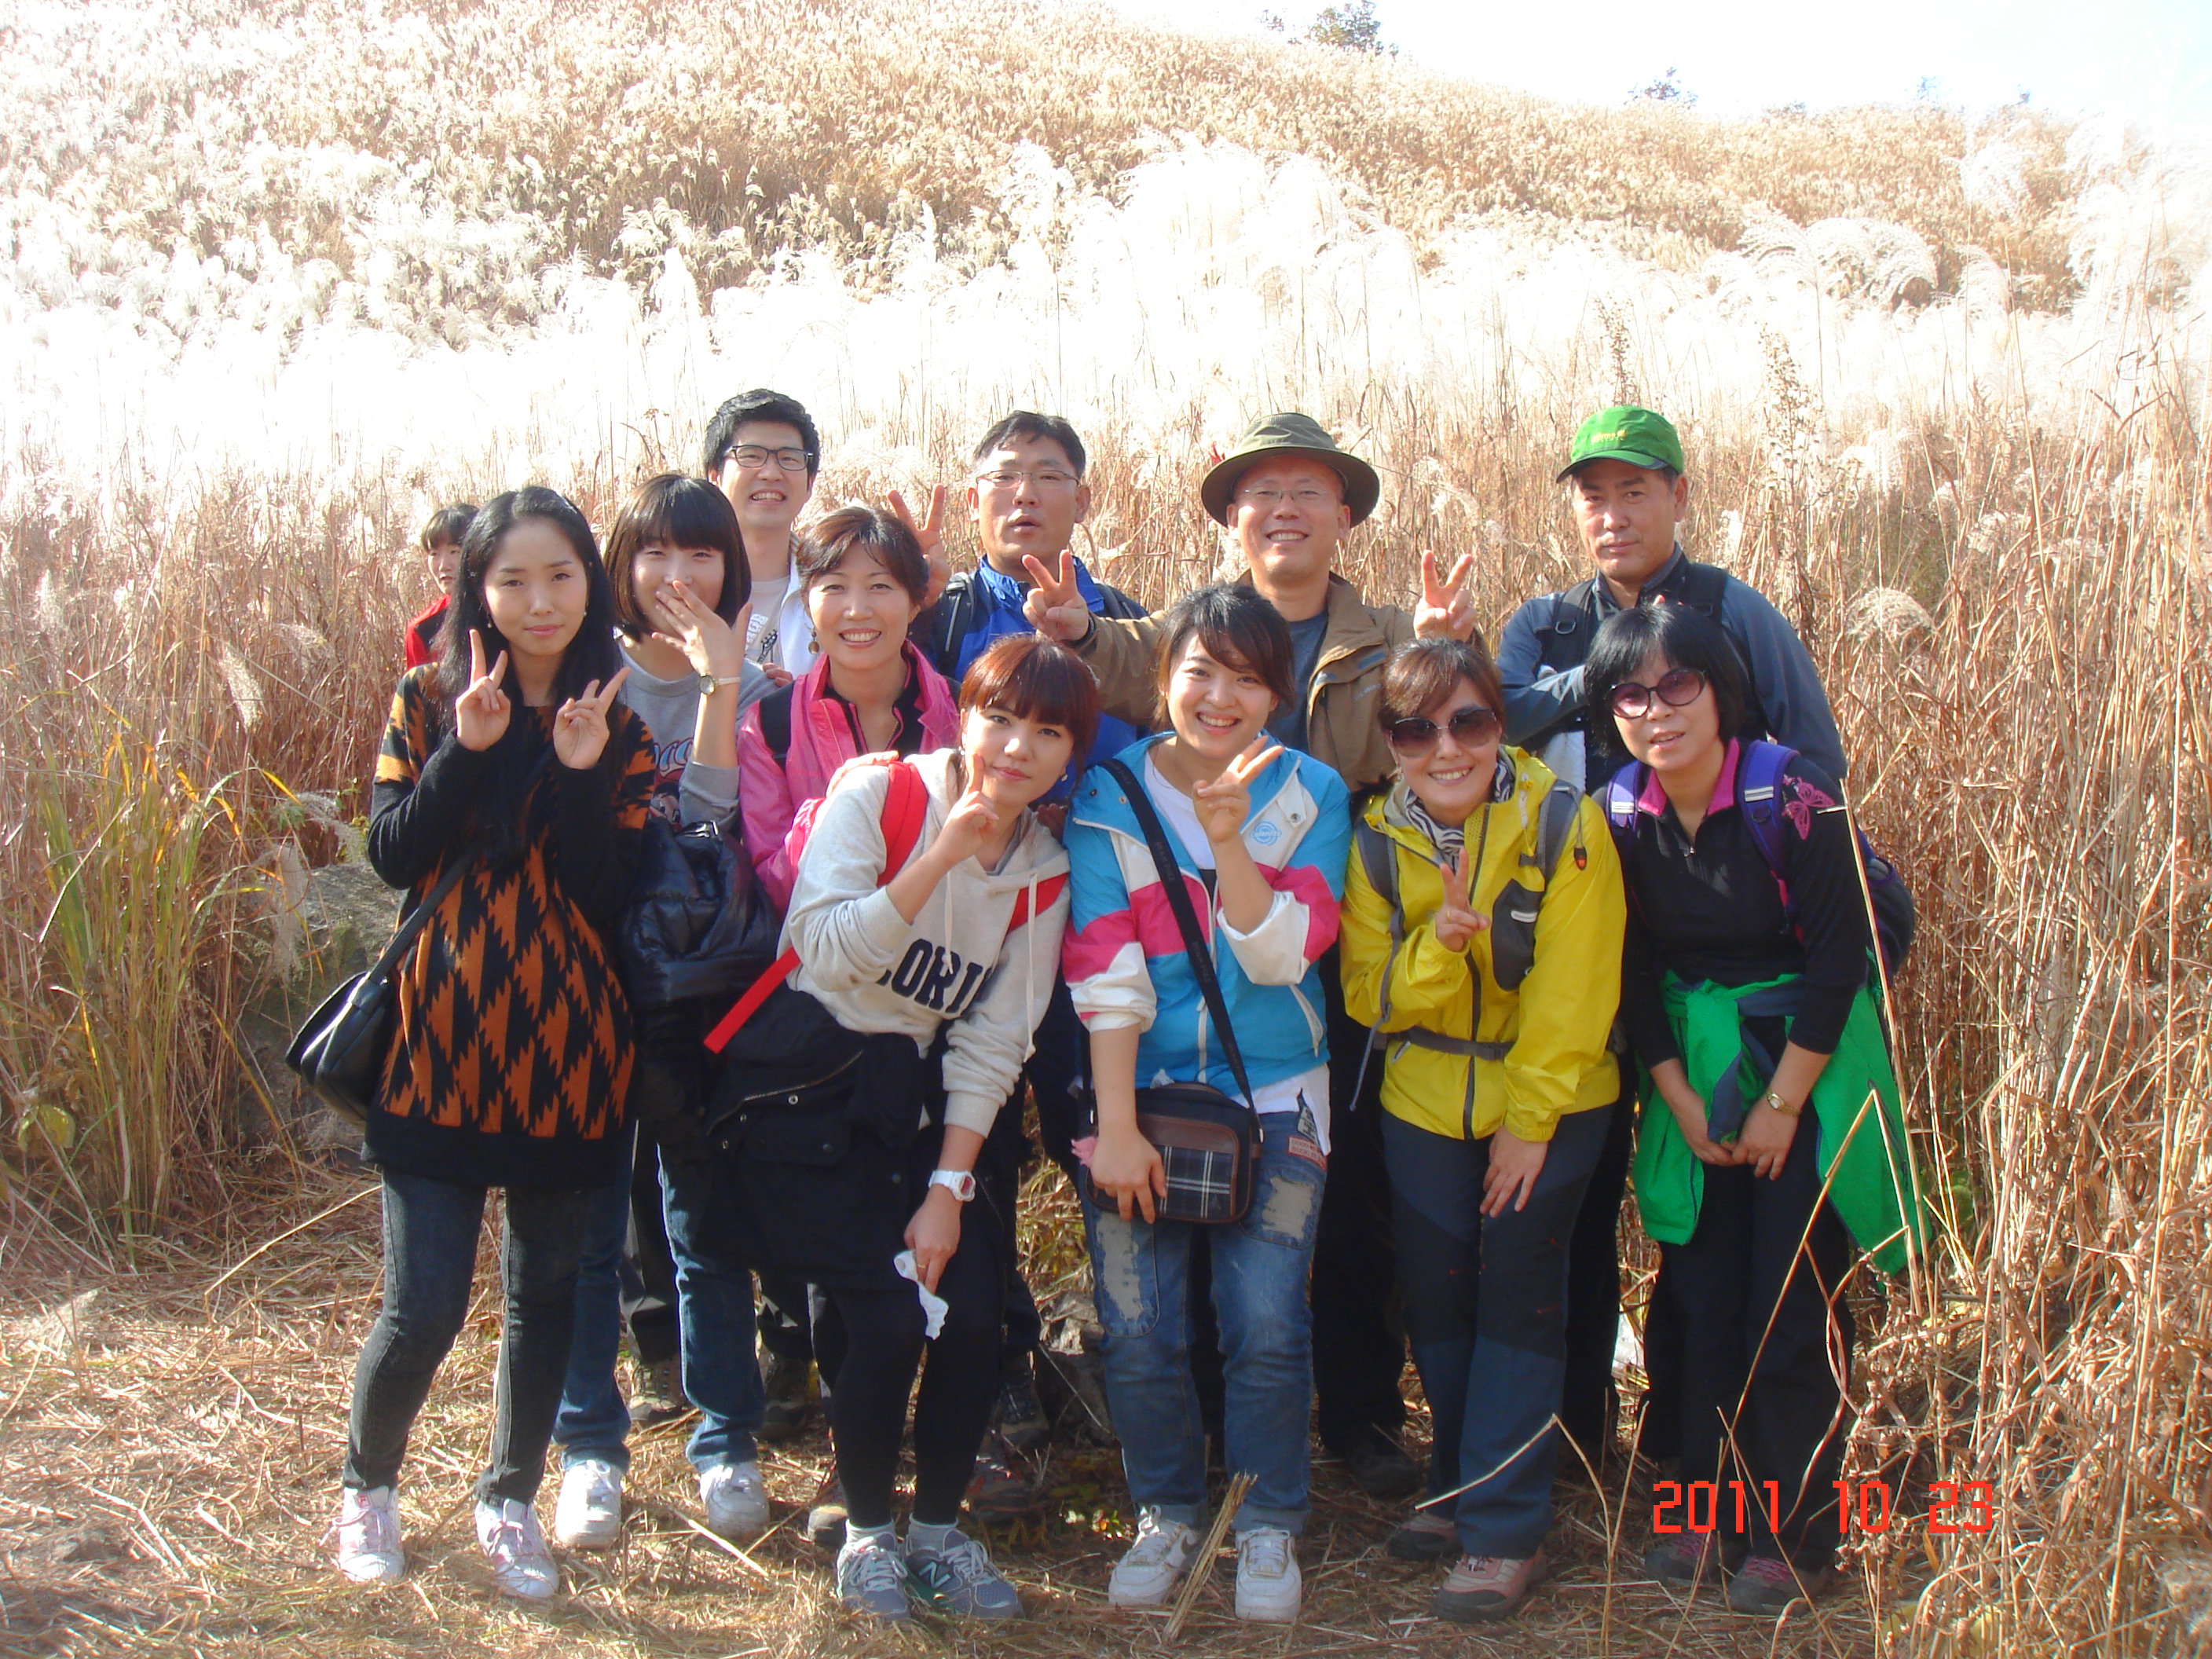 2011년 10월 23일 - 강북점 임직원 명성산 등반! 게시글의 1번째 첨부파일입니다.